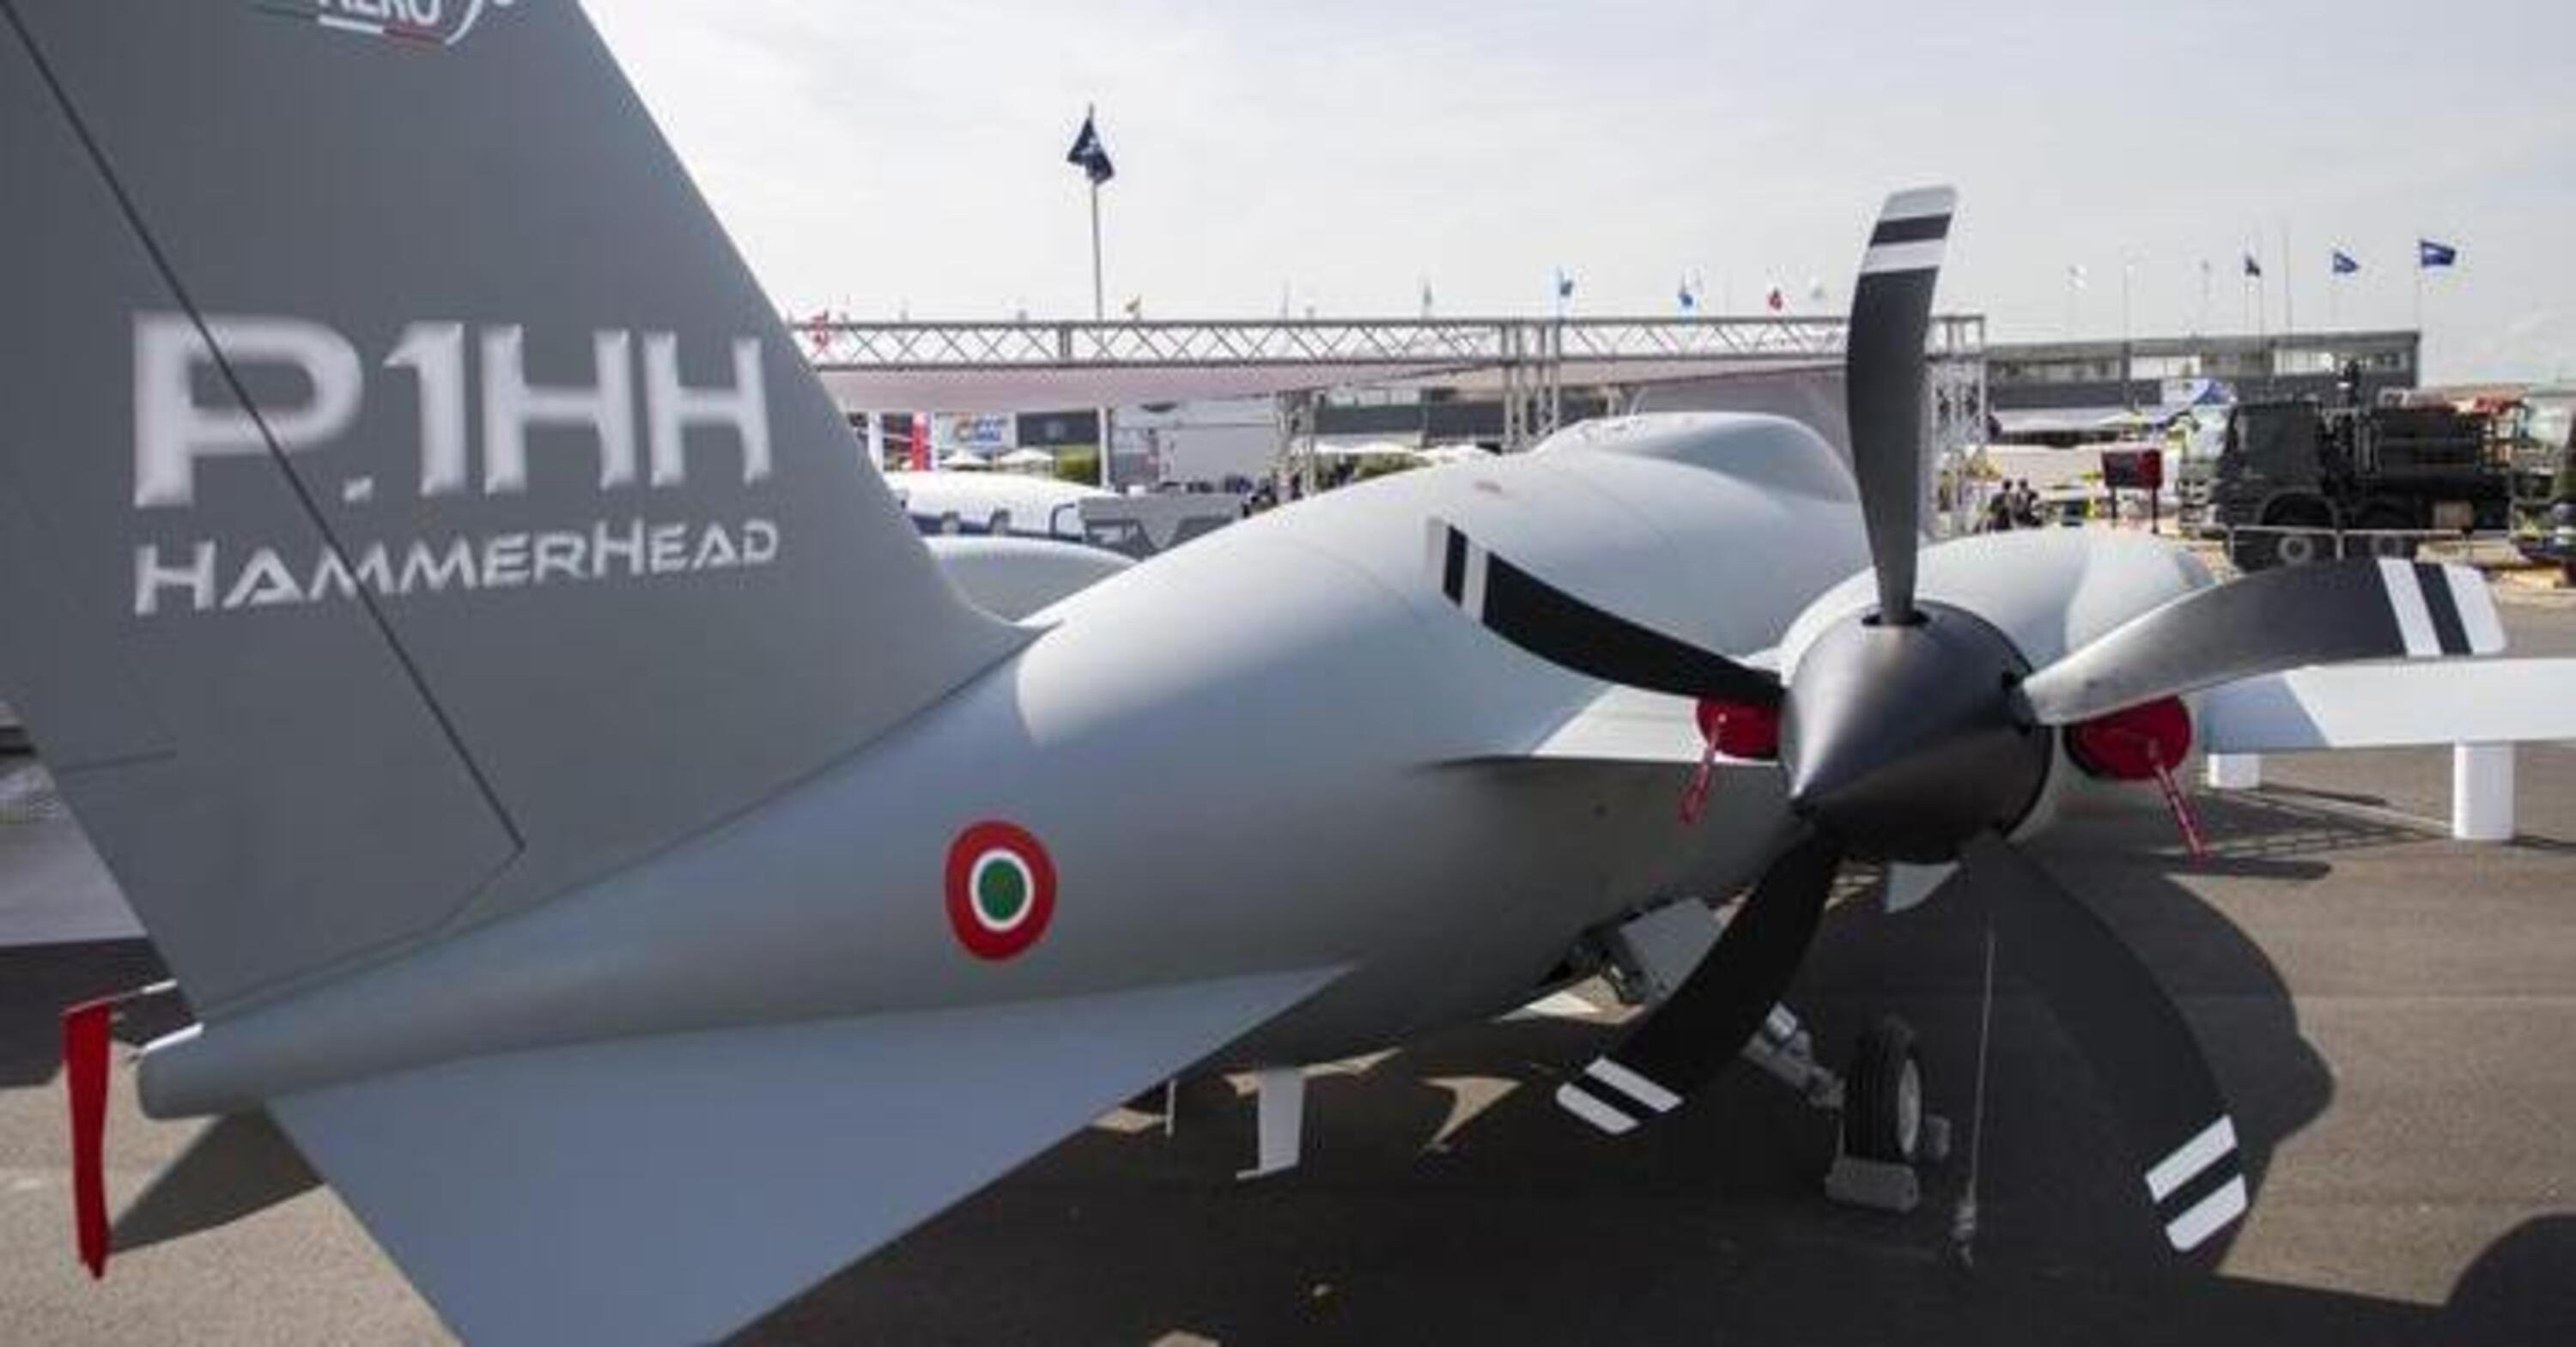 250 milioni per far funzionare i droni P.1HH: operazione discutibile